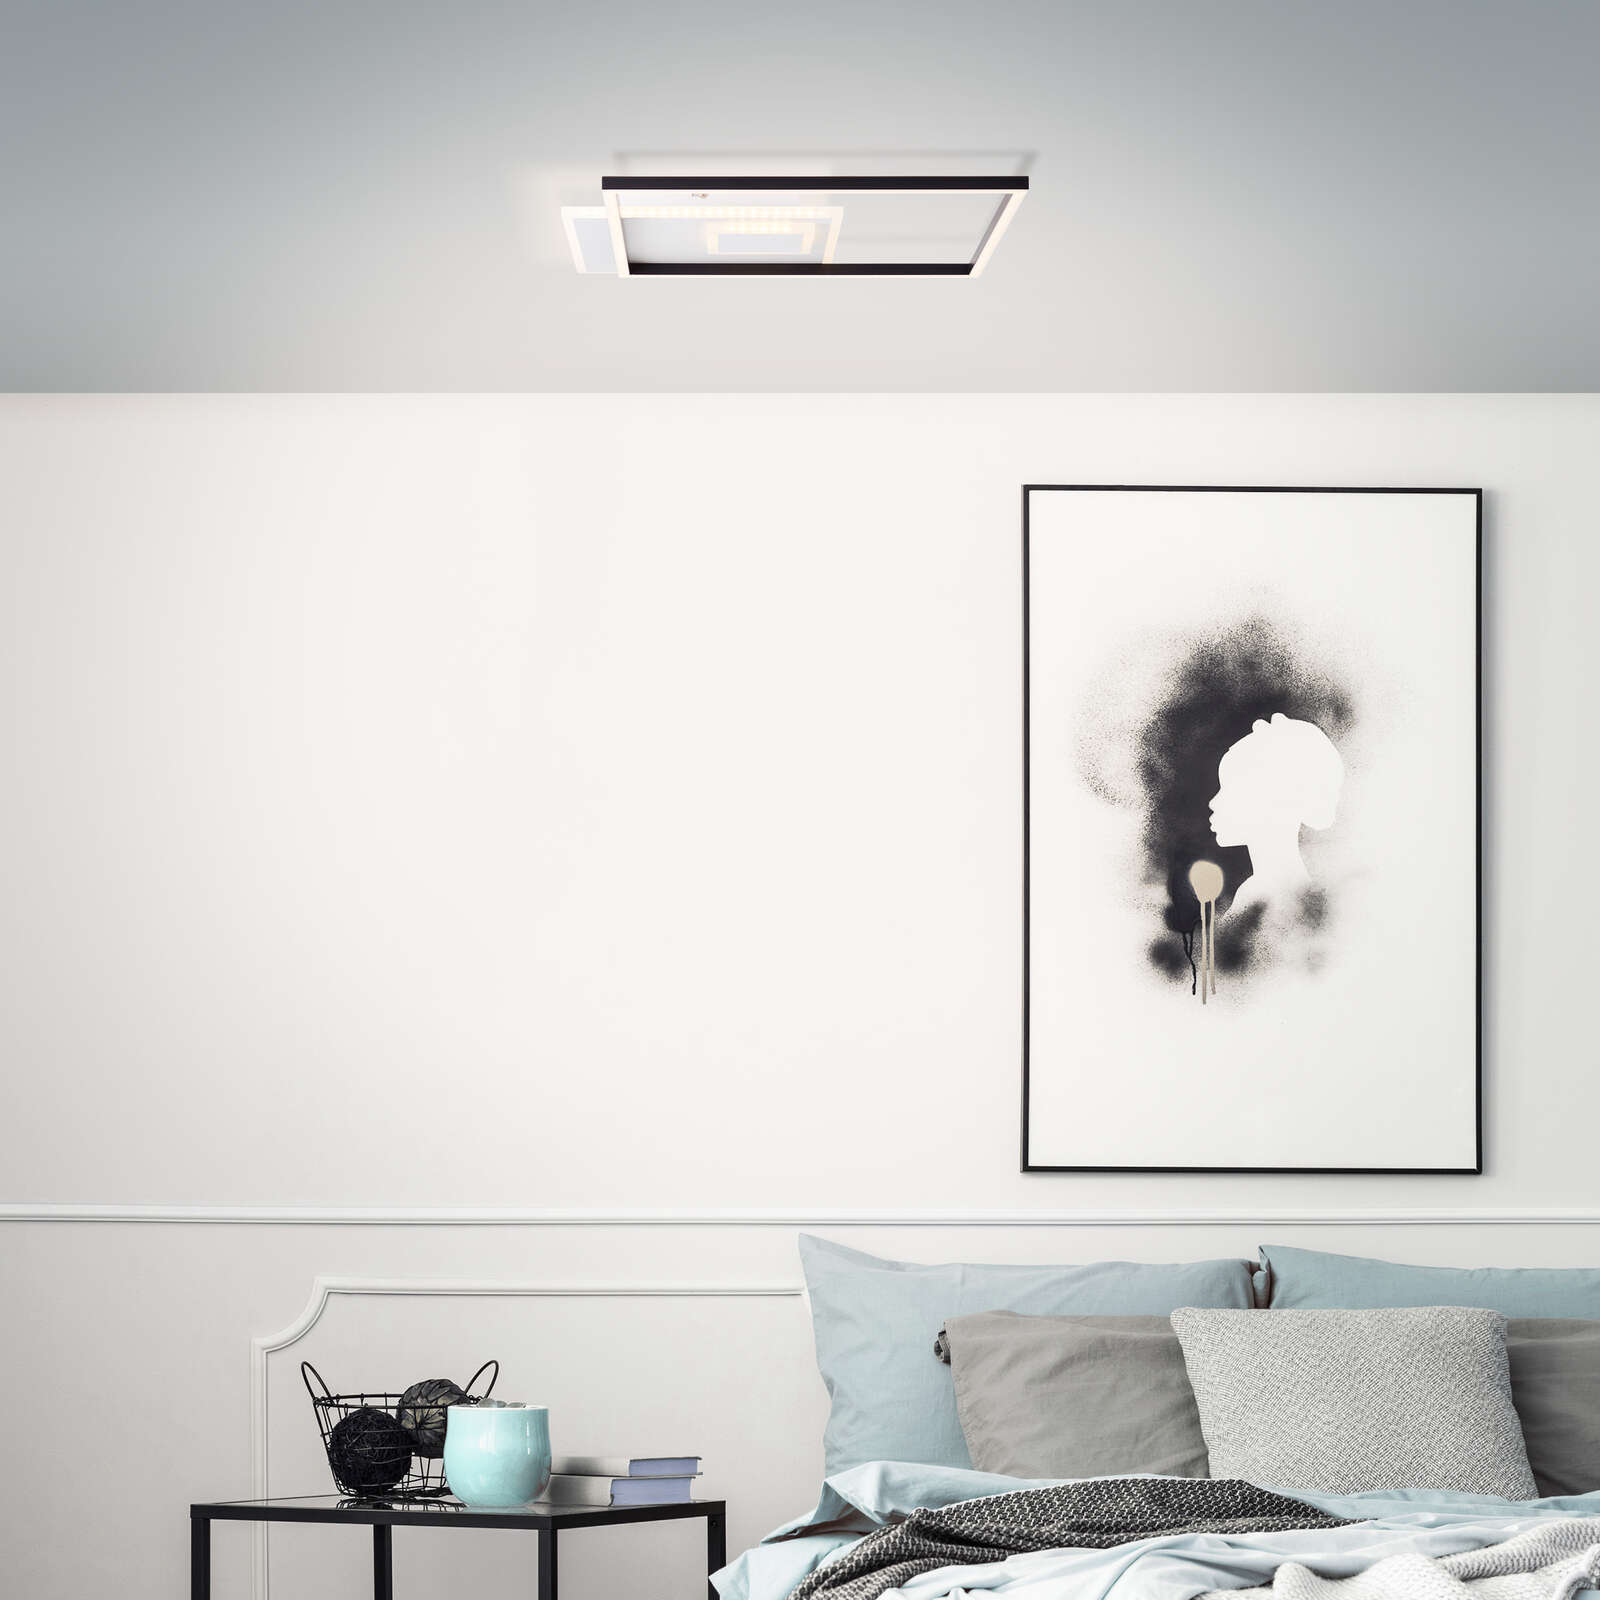             Plastic ceiling light - Johann - Black
        